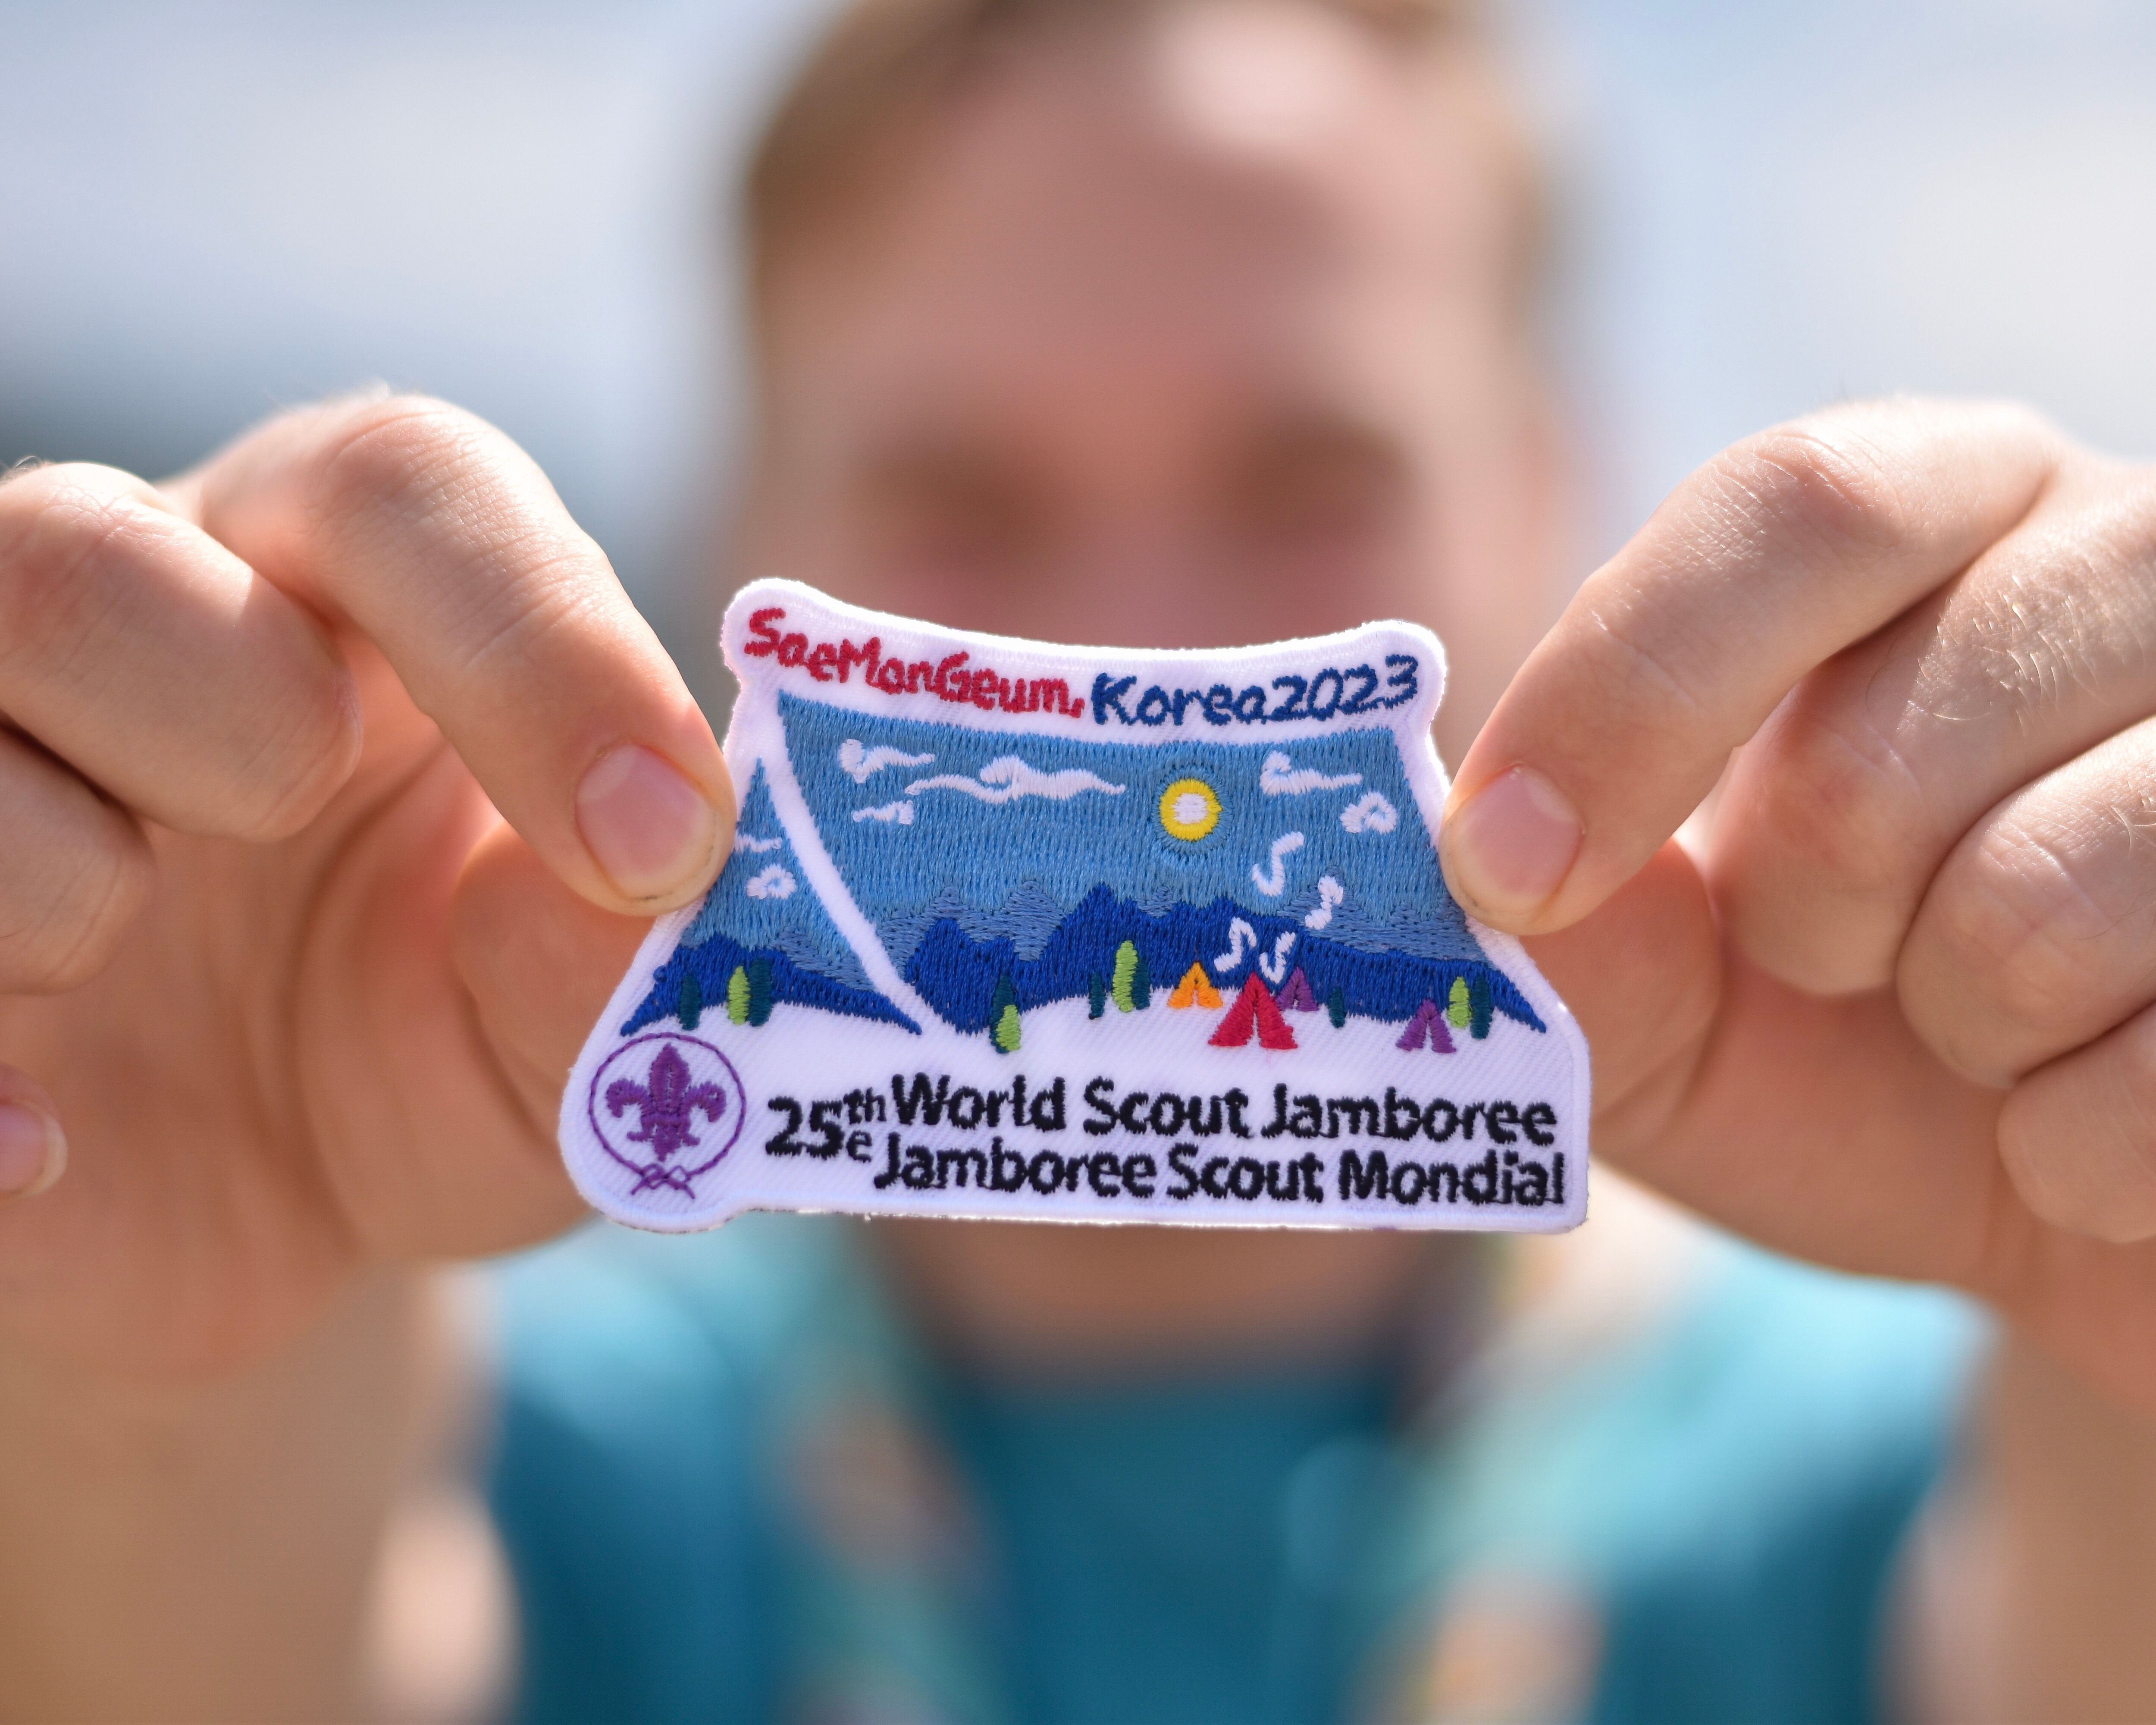 Avance del Jamboree Scout Mundial 2023 en Corea